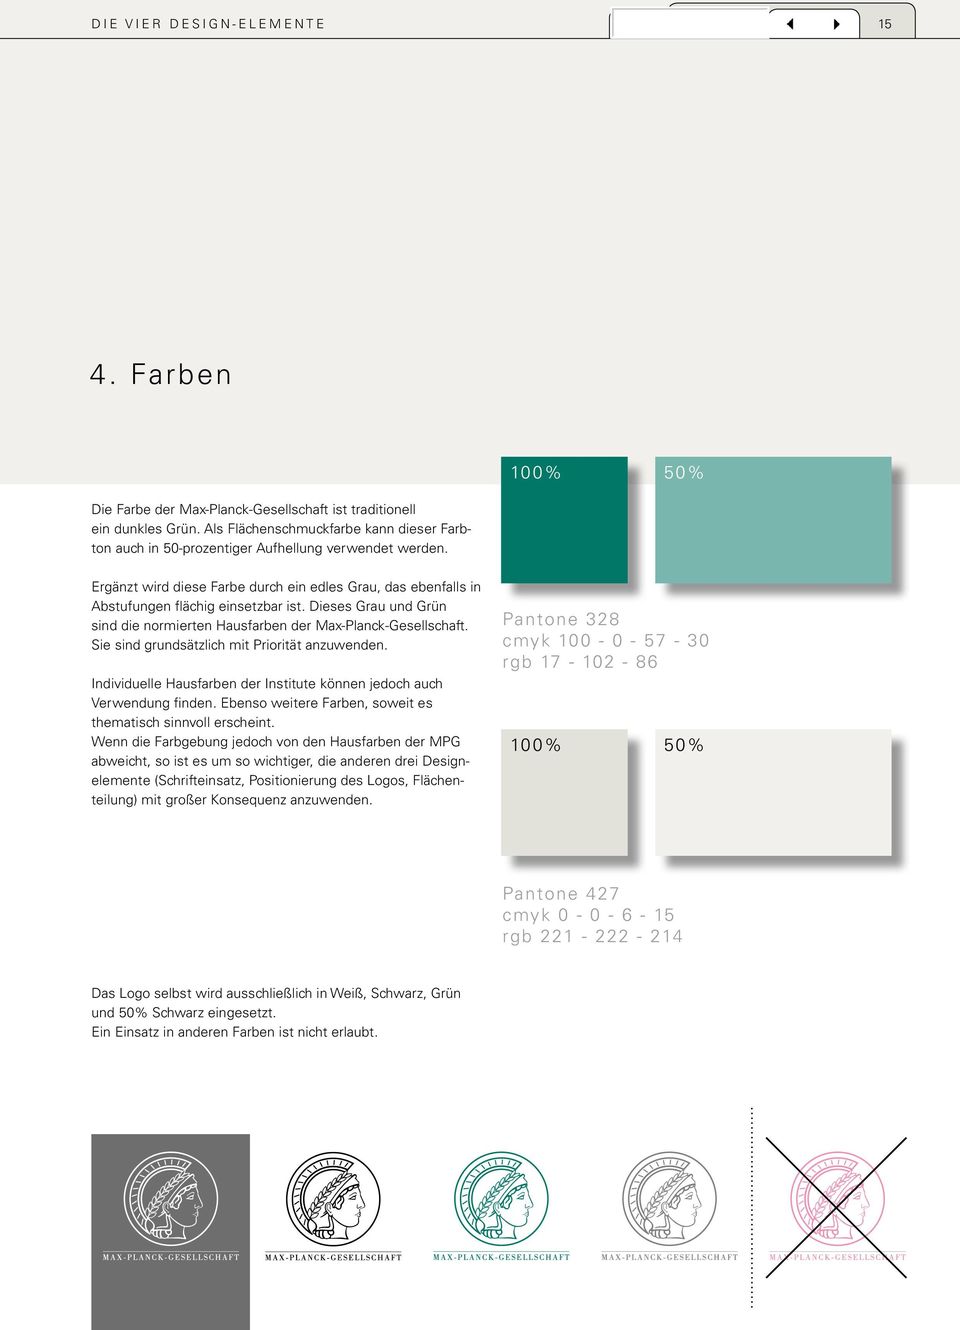 100% 50% Ergänzt wird diese Farbe durch ein edles Grau, das ebenfalls in Abstufungen flächig einsetzbar ist. Dieses Grau und Grün sind die normierten Hausfarben der Max-Planck-Gesellschaft.